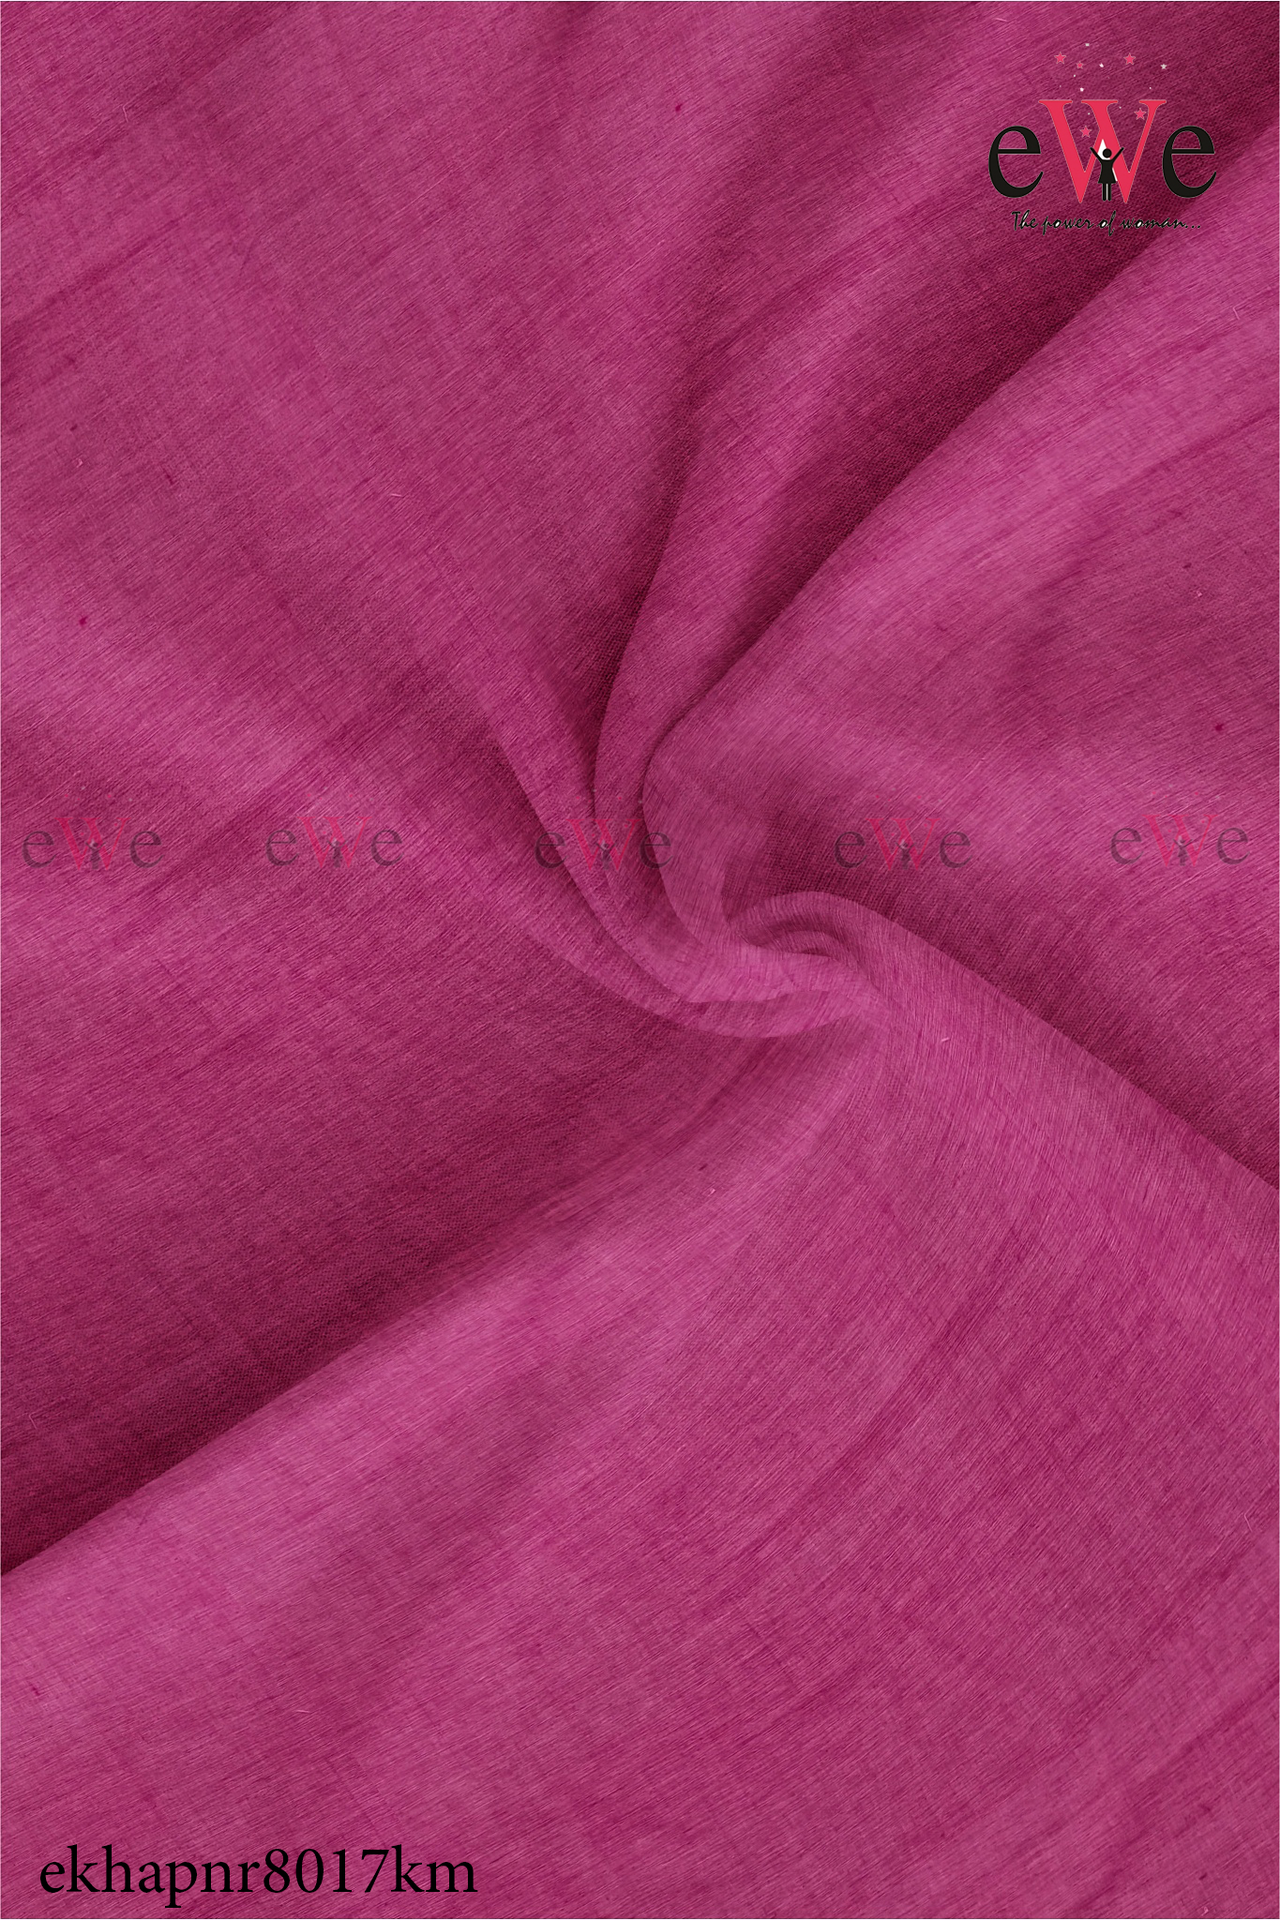 Rose Handspun Handwoven Khadi Fabric